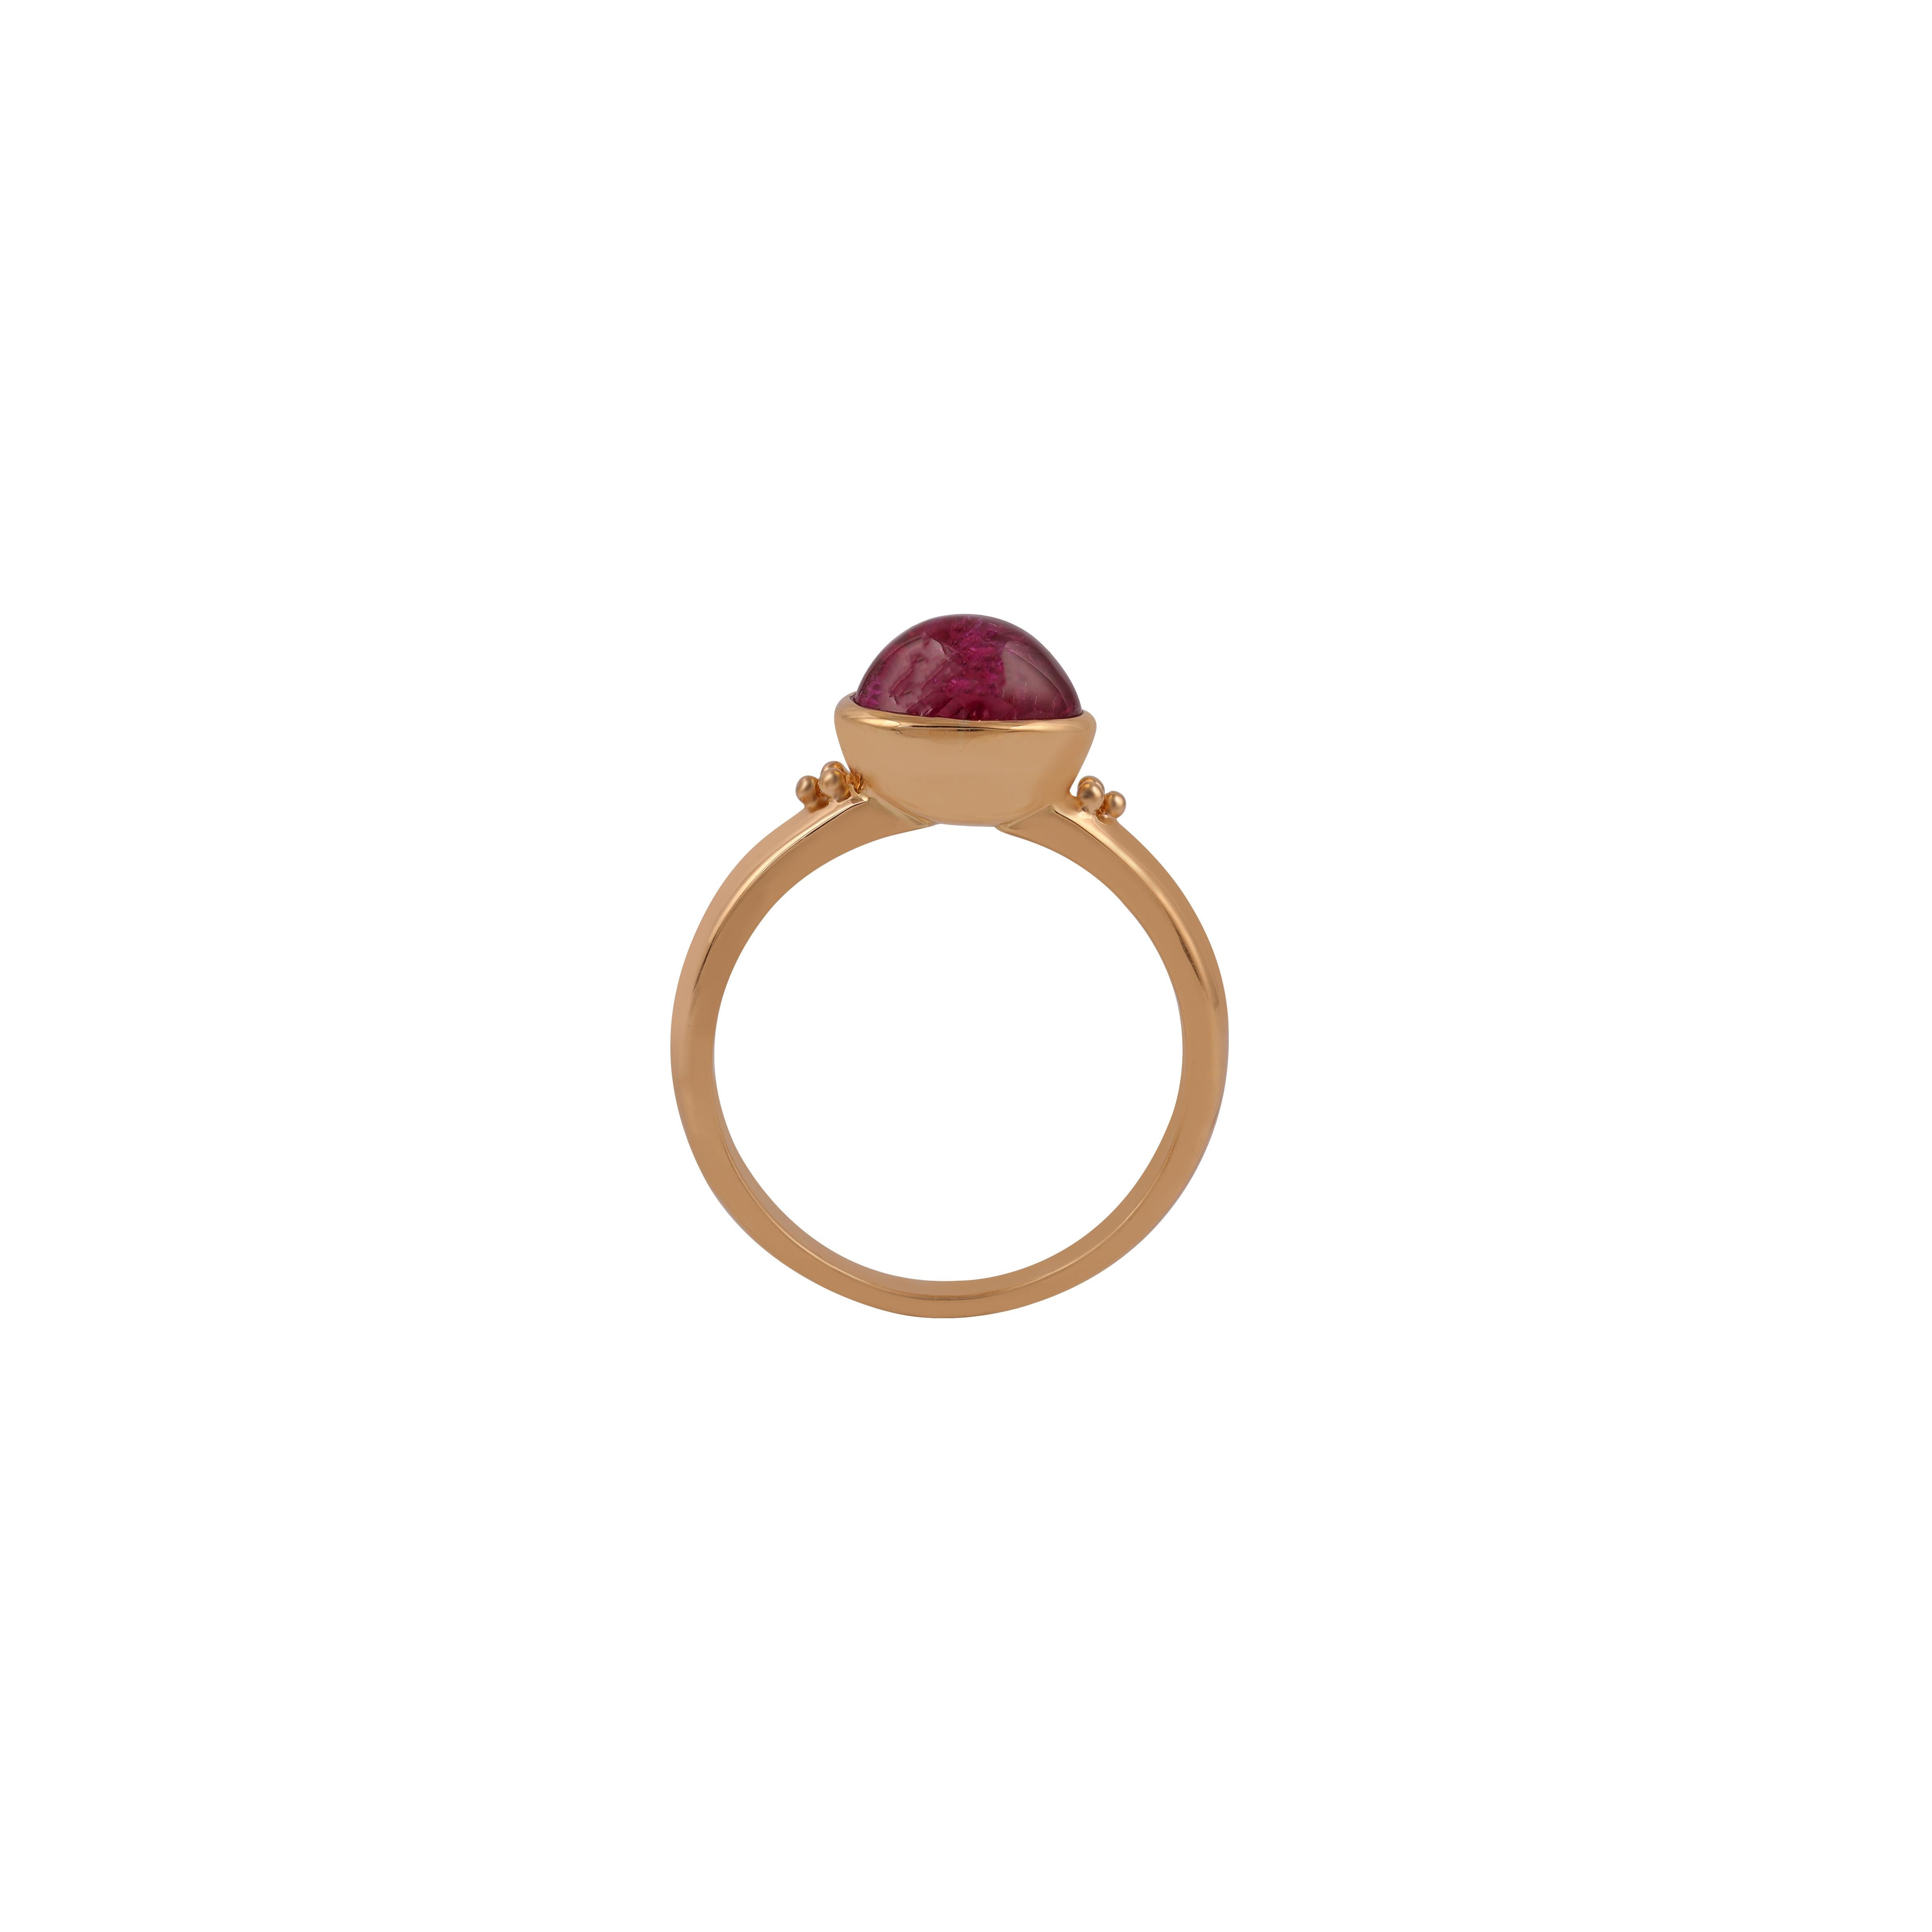 Ein klassischer Ring mit einem 3,48-karätigen Burma-Rubin mit natürlichem Cabochon. Der birmanische Rubin gehört seit Jahrhunderten zu den begehrtesten Edelsteinen der Welt, denn die Steine aus diesen legendären Minen zeichnen sich durch ihre